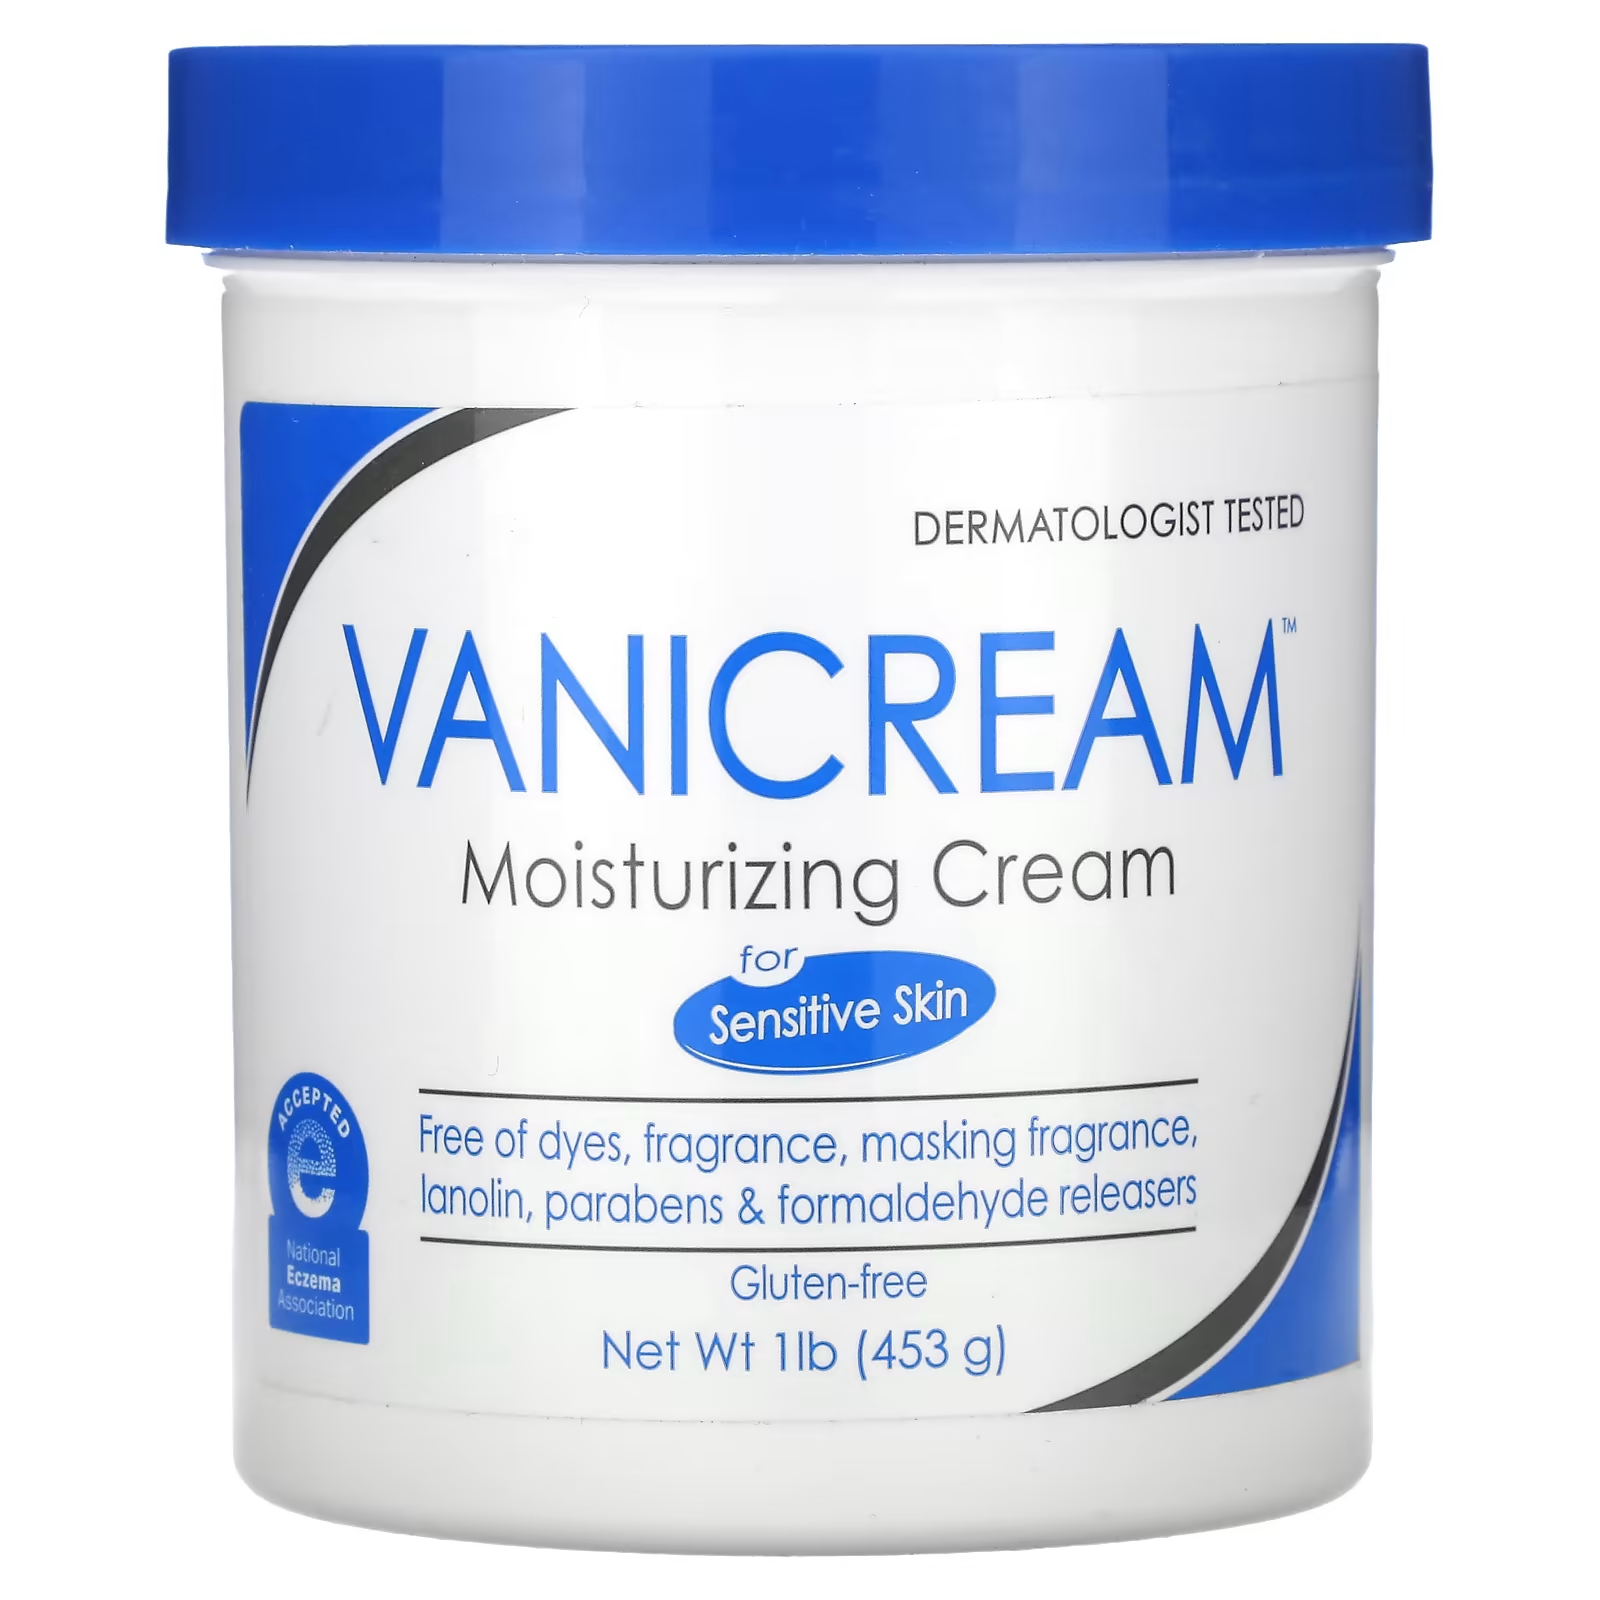 Увлажняющий крем Vanicream для сухой, раздраженной или чувствительной кожи, 1 фунт (453 г) фотографии